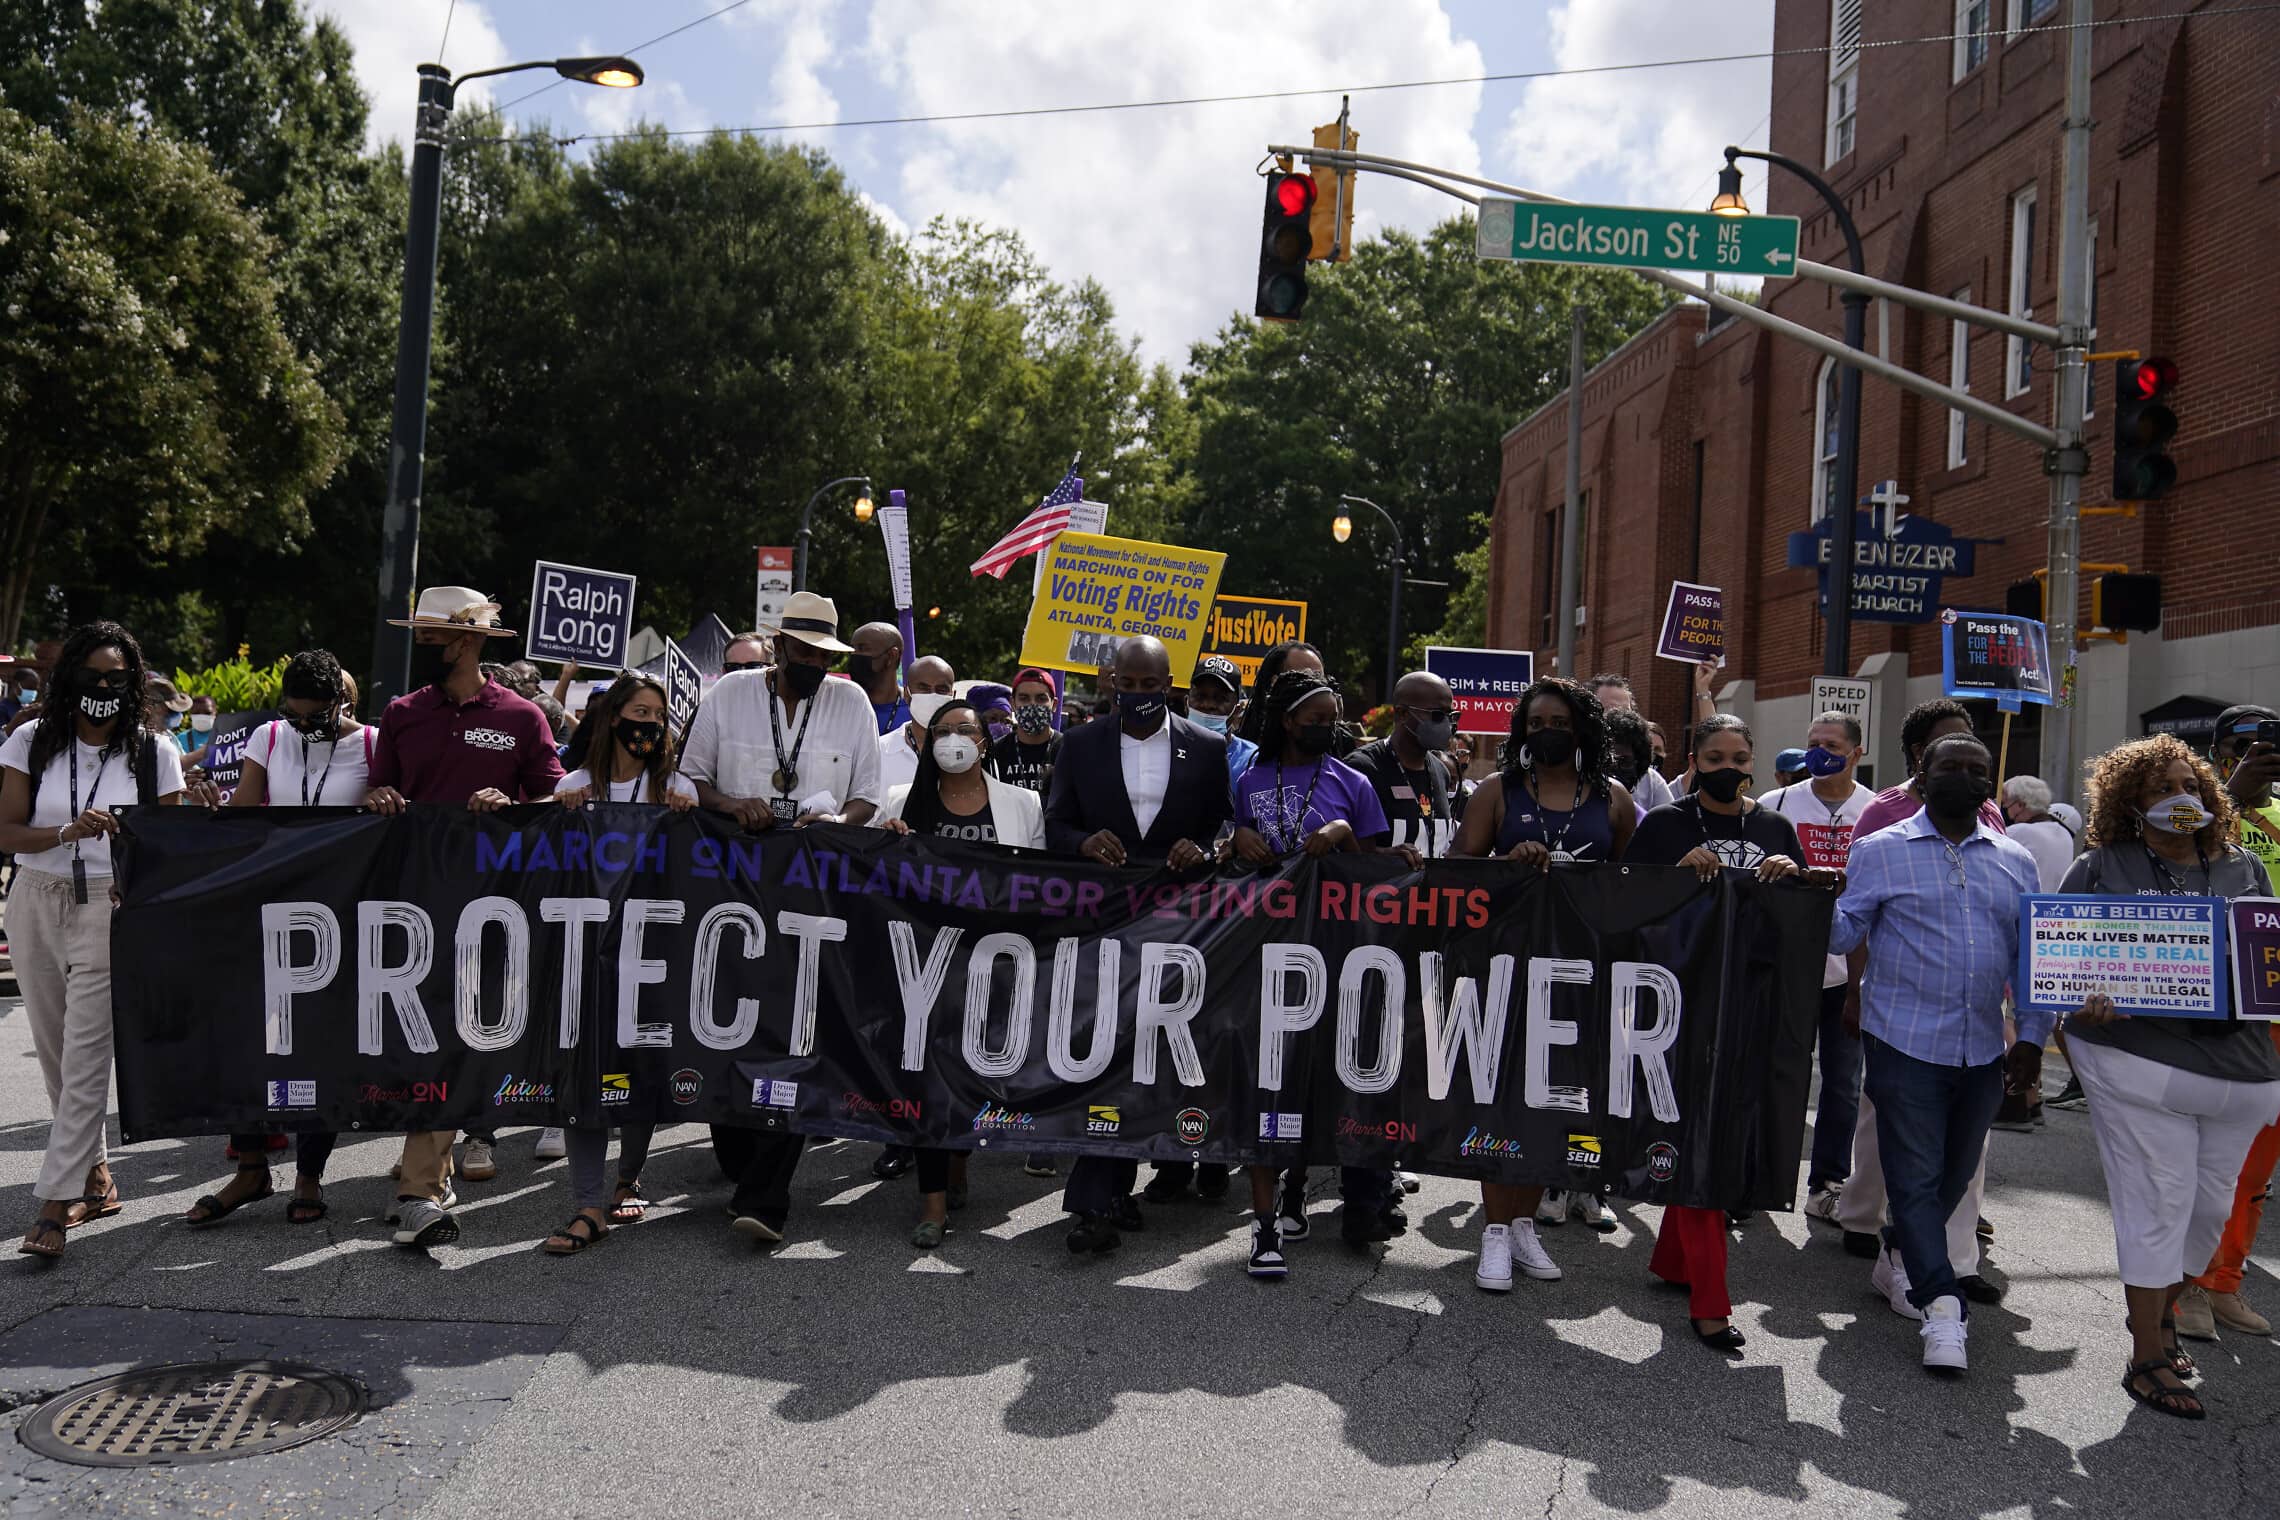 מפגינים בוושינגטון הבירה למען זכות הצבעה בקונגרס, 28 באוגוסט 2021 (צילום: AP Photo/Brynn Anderson)